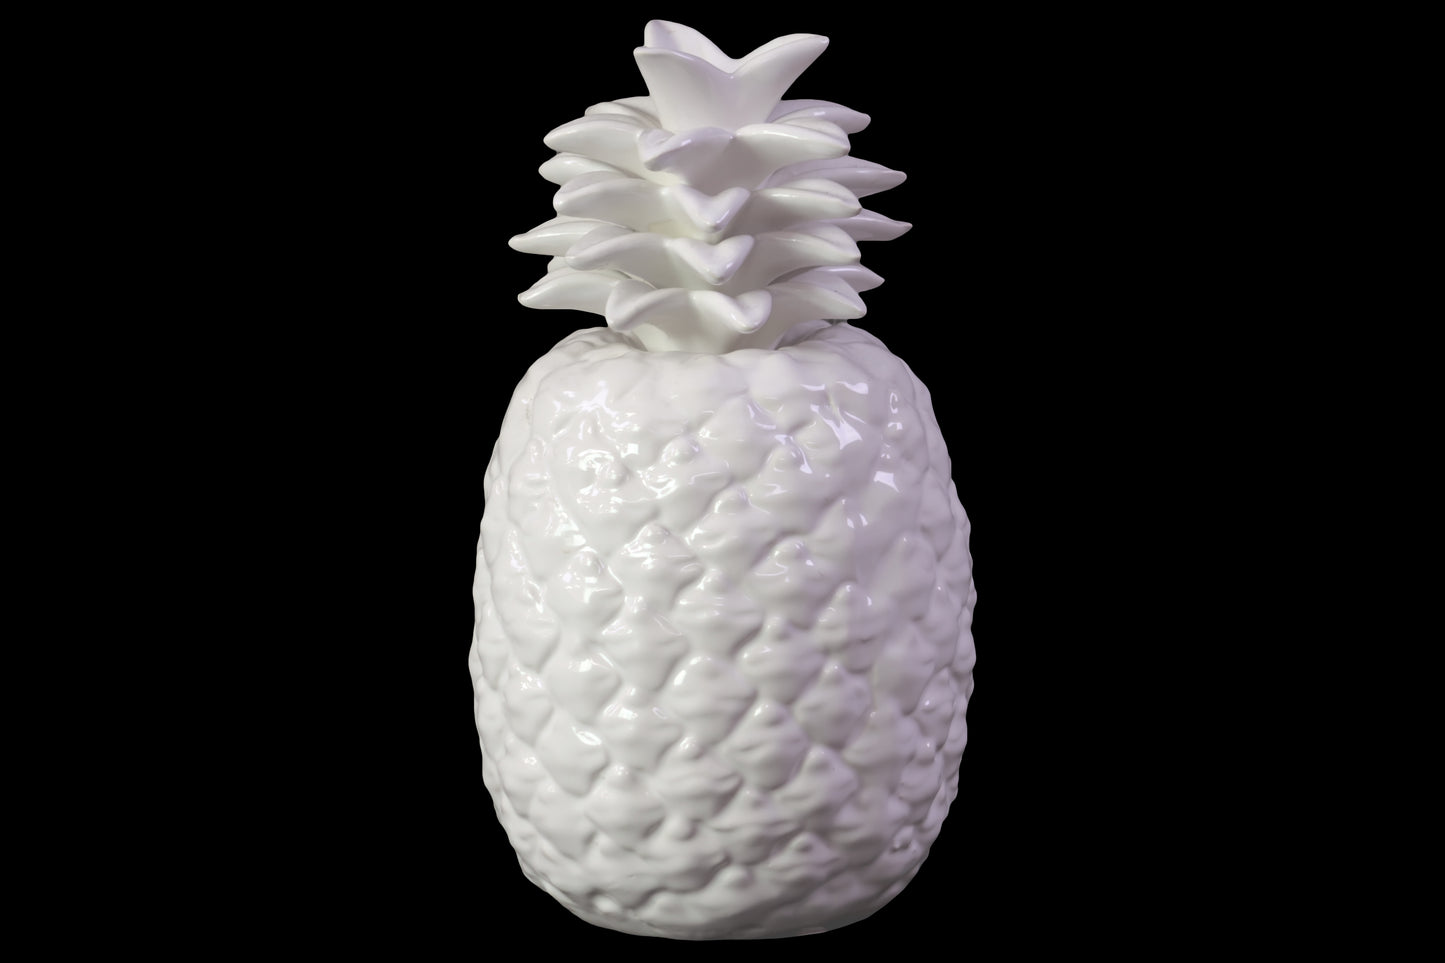 9" Ceramic Pineapple Figurine Gloss Finish White